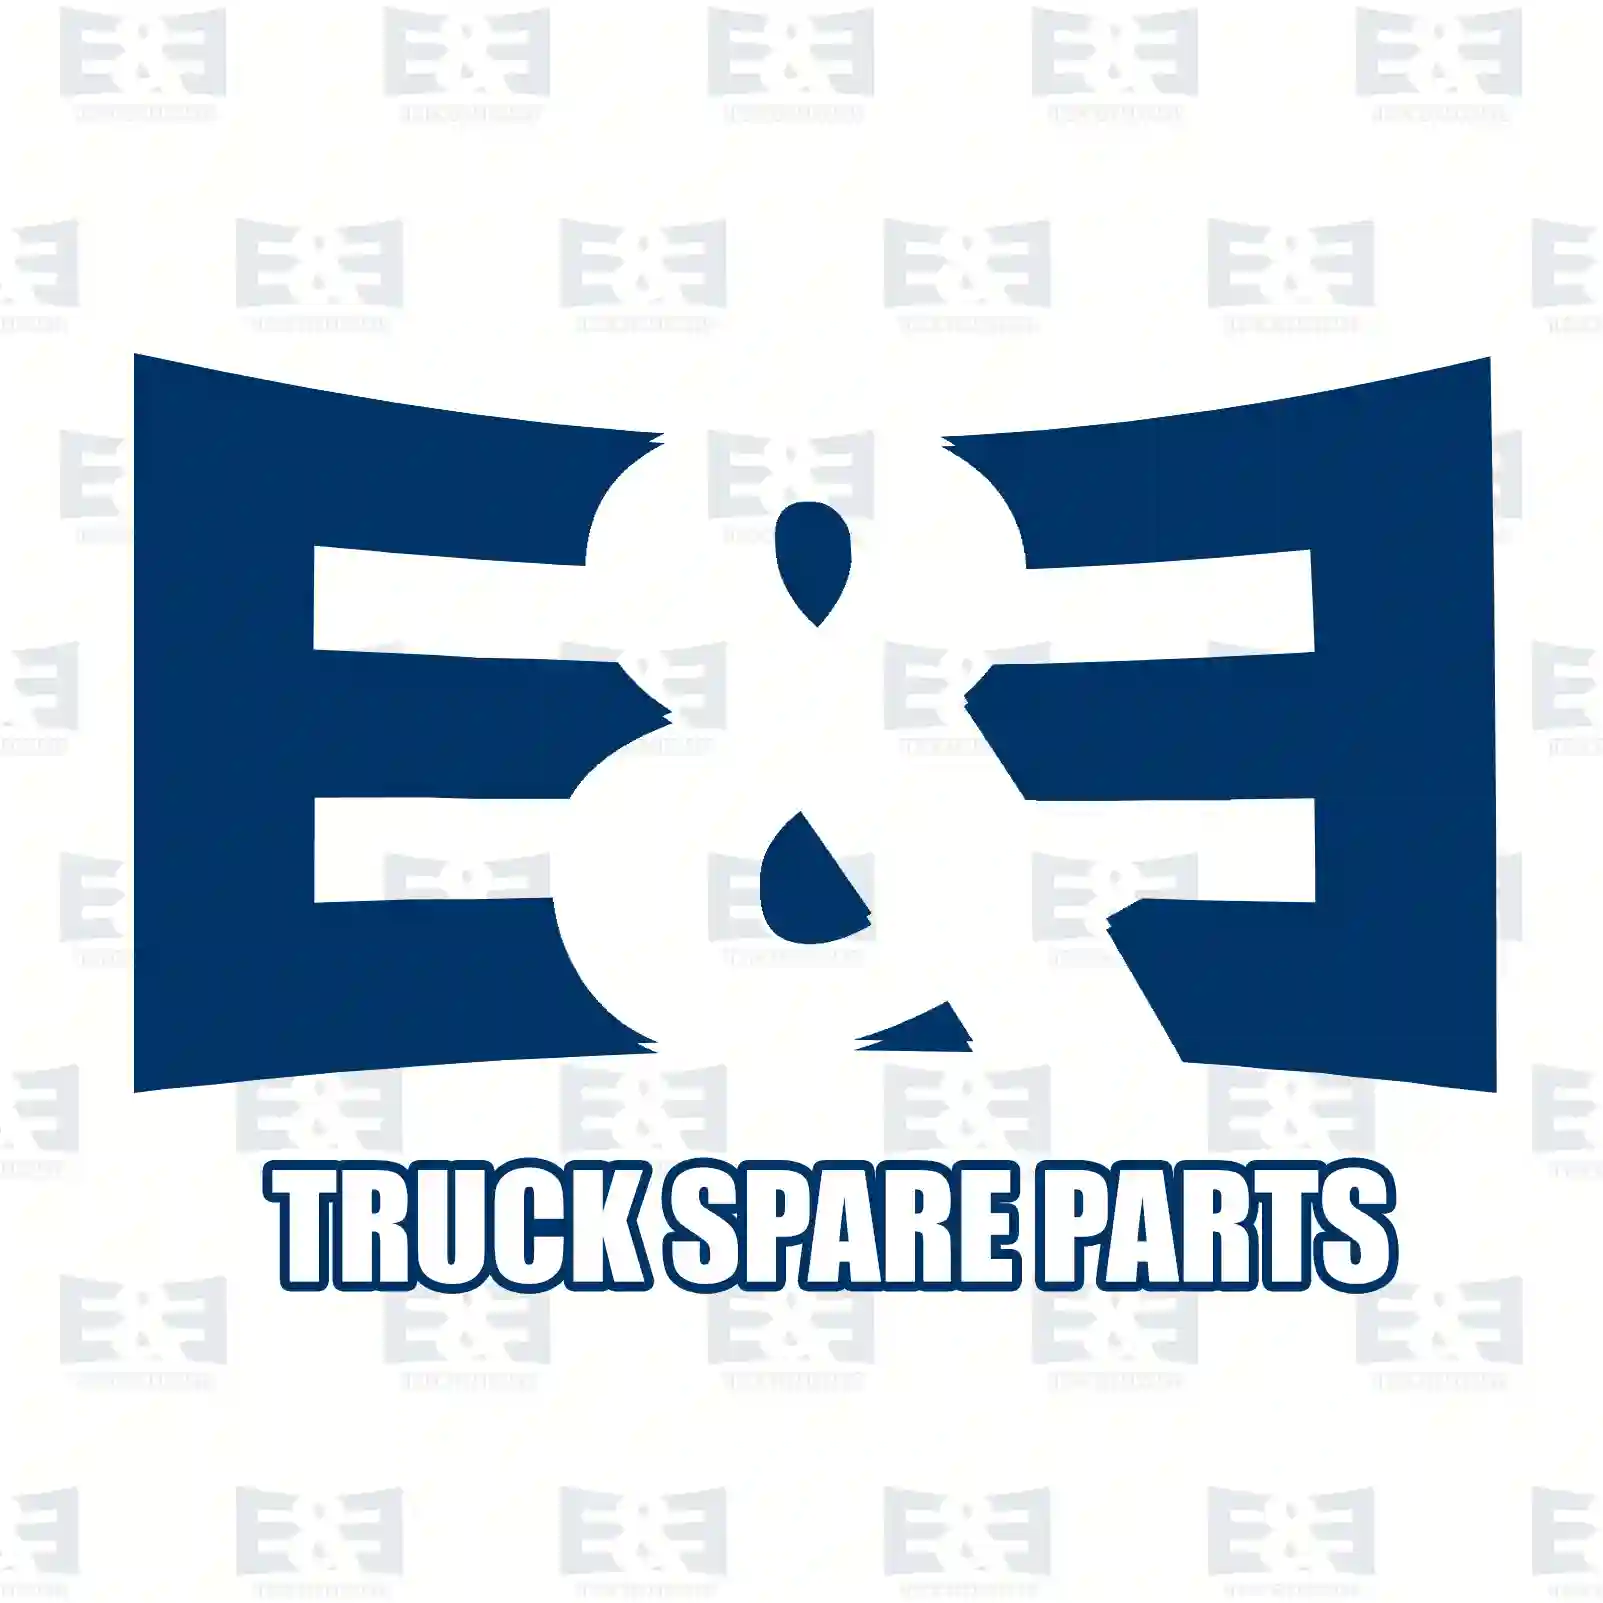 Exhaust brake, complete, 2E2208158, 1401775 ||  2E2208158 E&E Truck Spare Parts | Truck Spare Parts, Auotomotive Spare Parts Exhaust brake, complete, 2E2208158, 1401775 ||  2E2208158 E&E Truck Spare Parts | Truck Spare Parts, Auotomotive Spare Parts